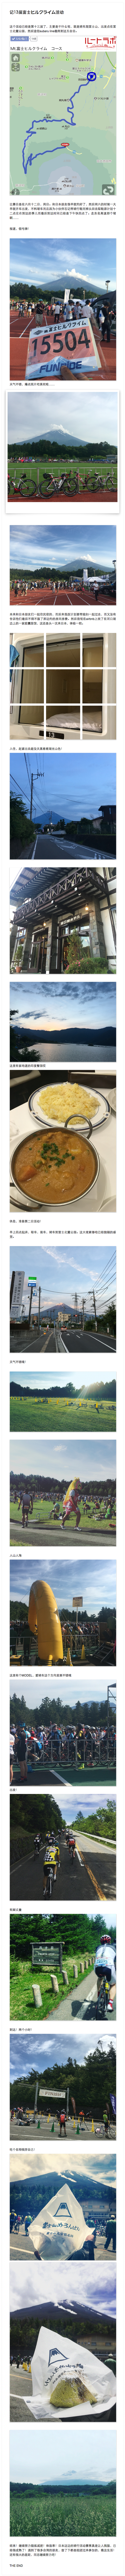 20160612 Mt. 富士ヒルクライム